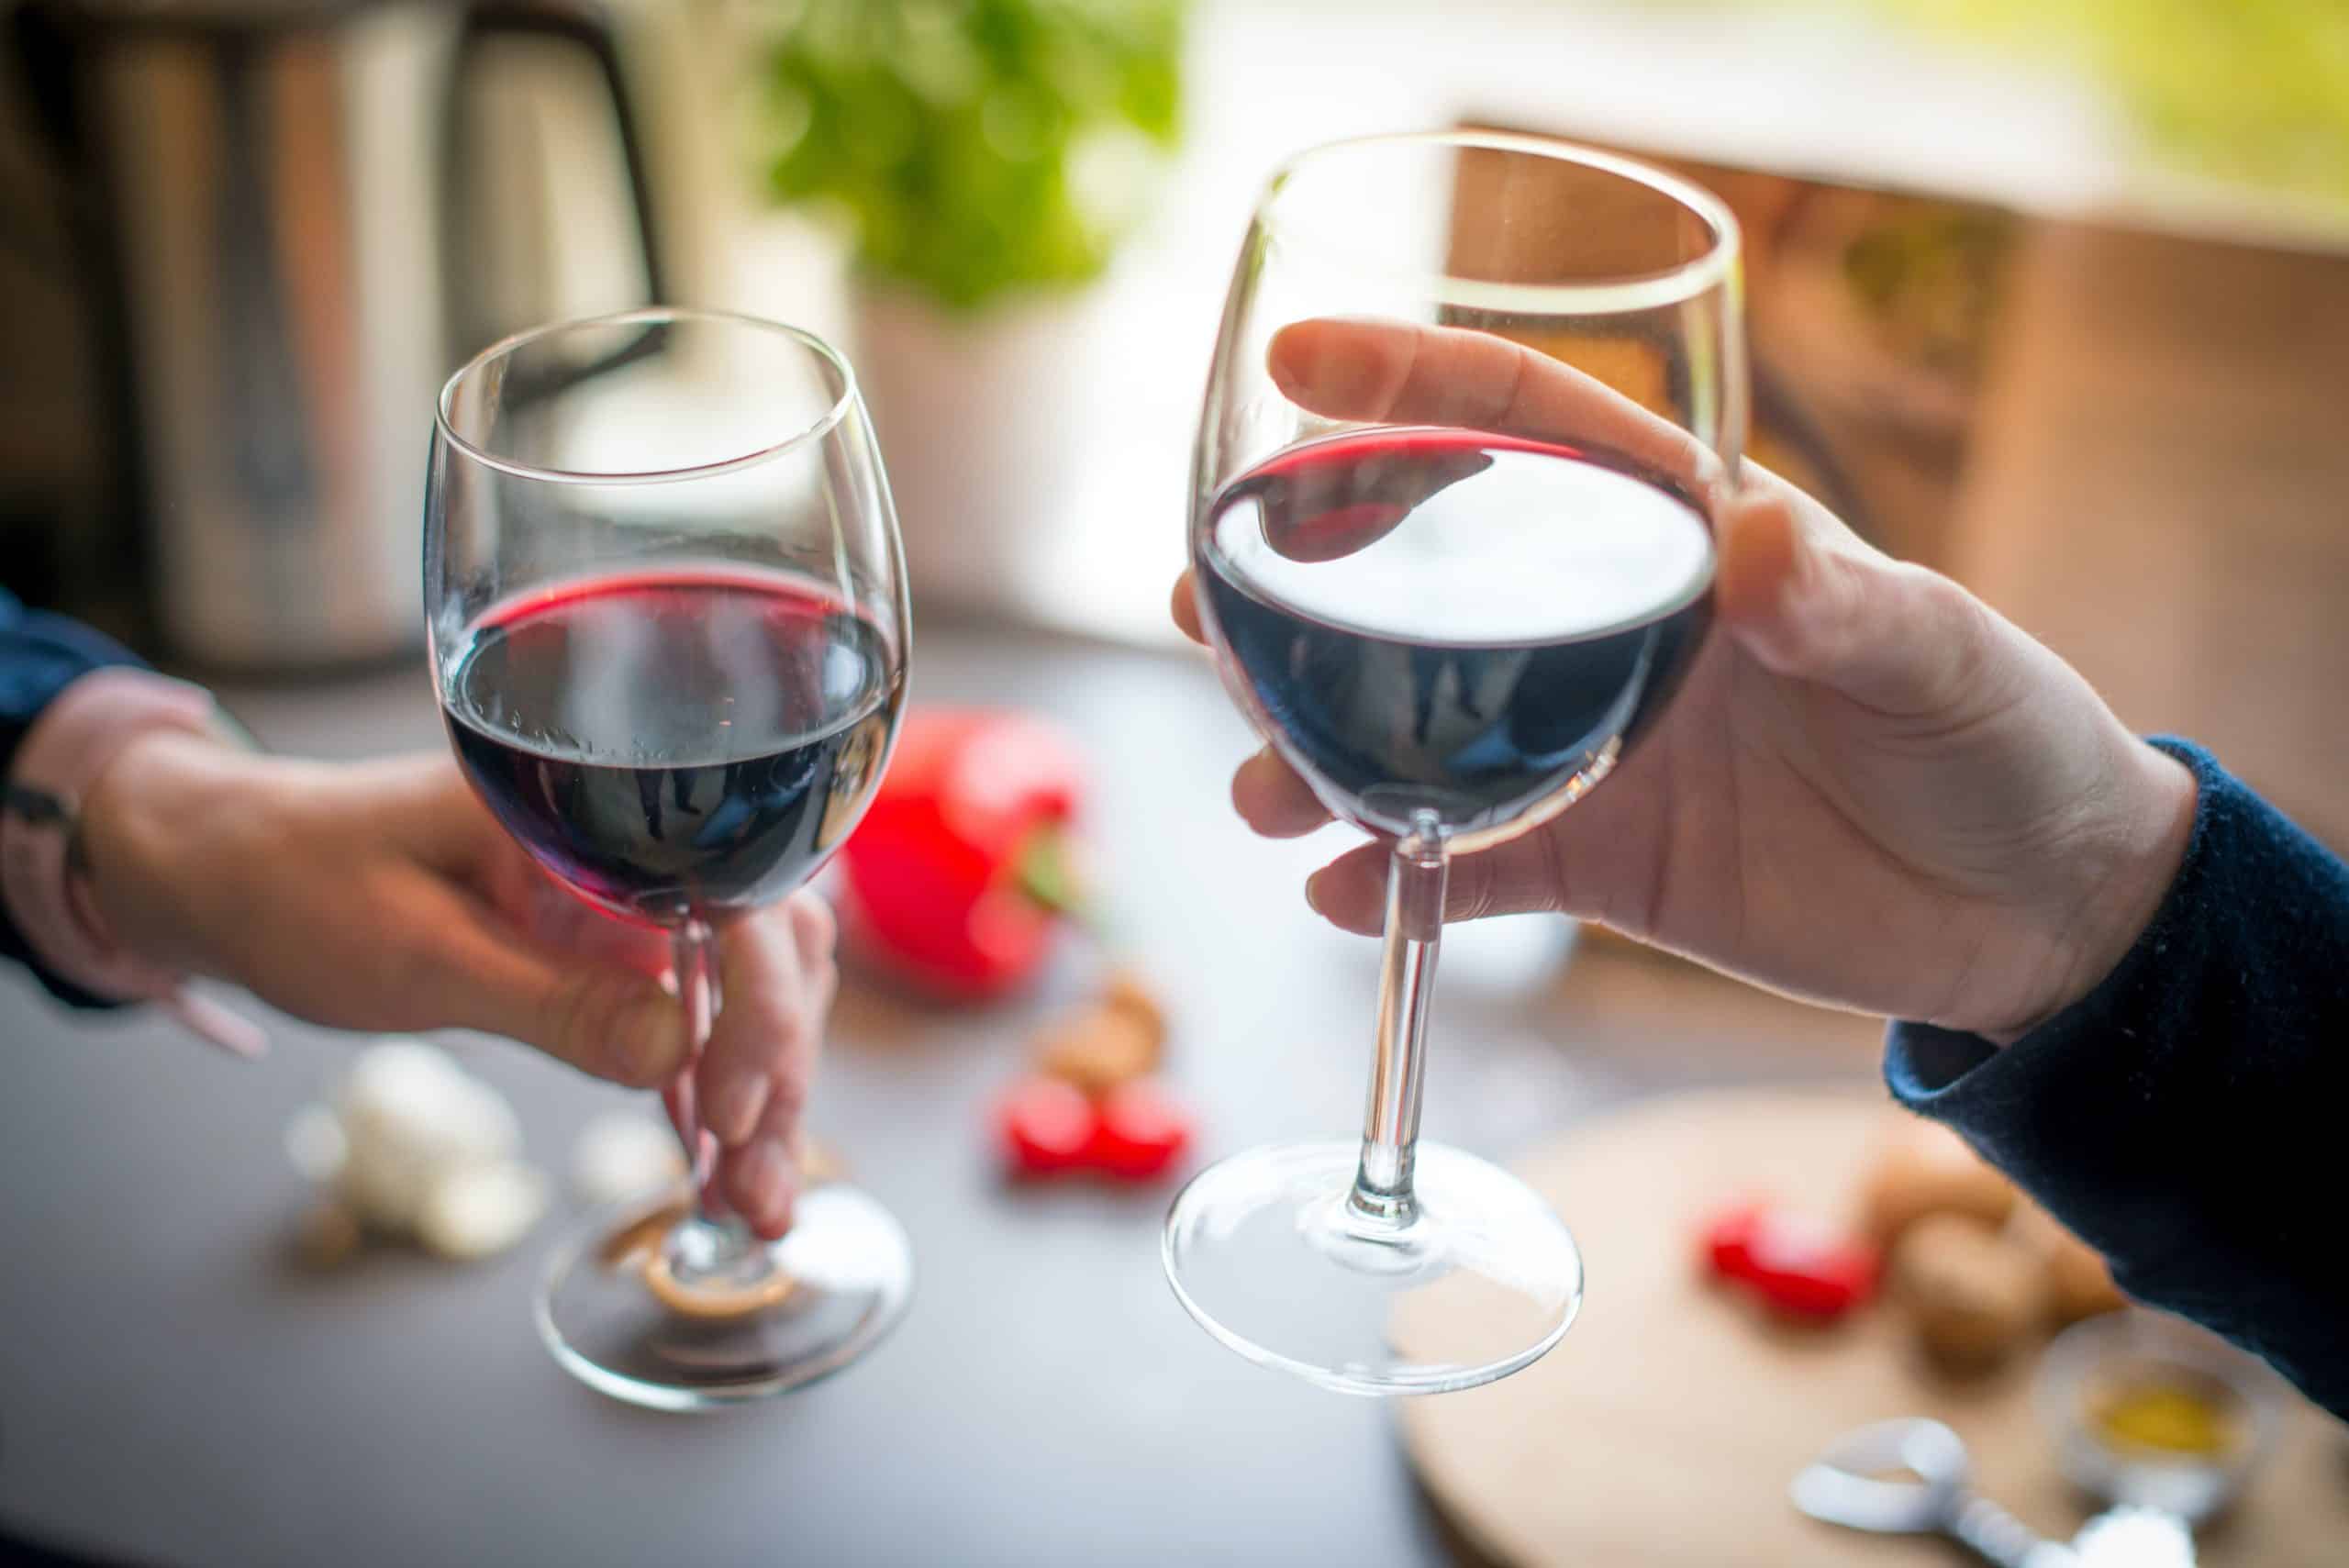 Twee mensen proosten met een glas rode wijn.